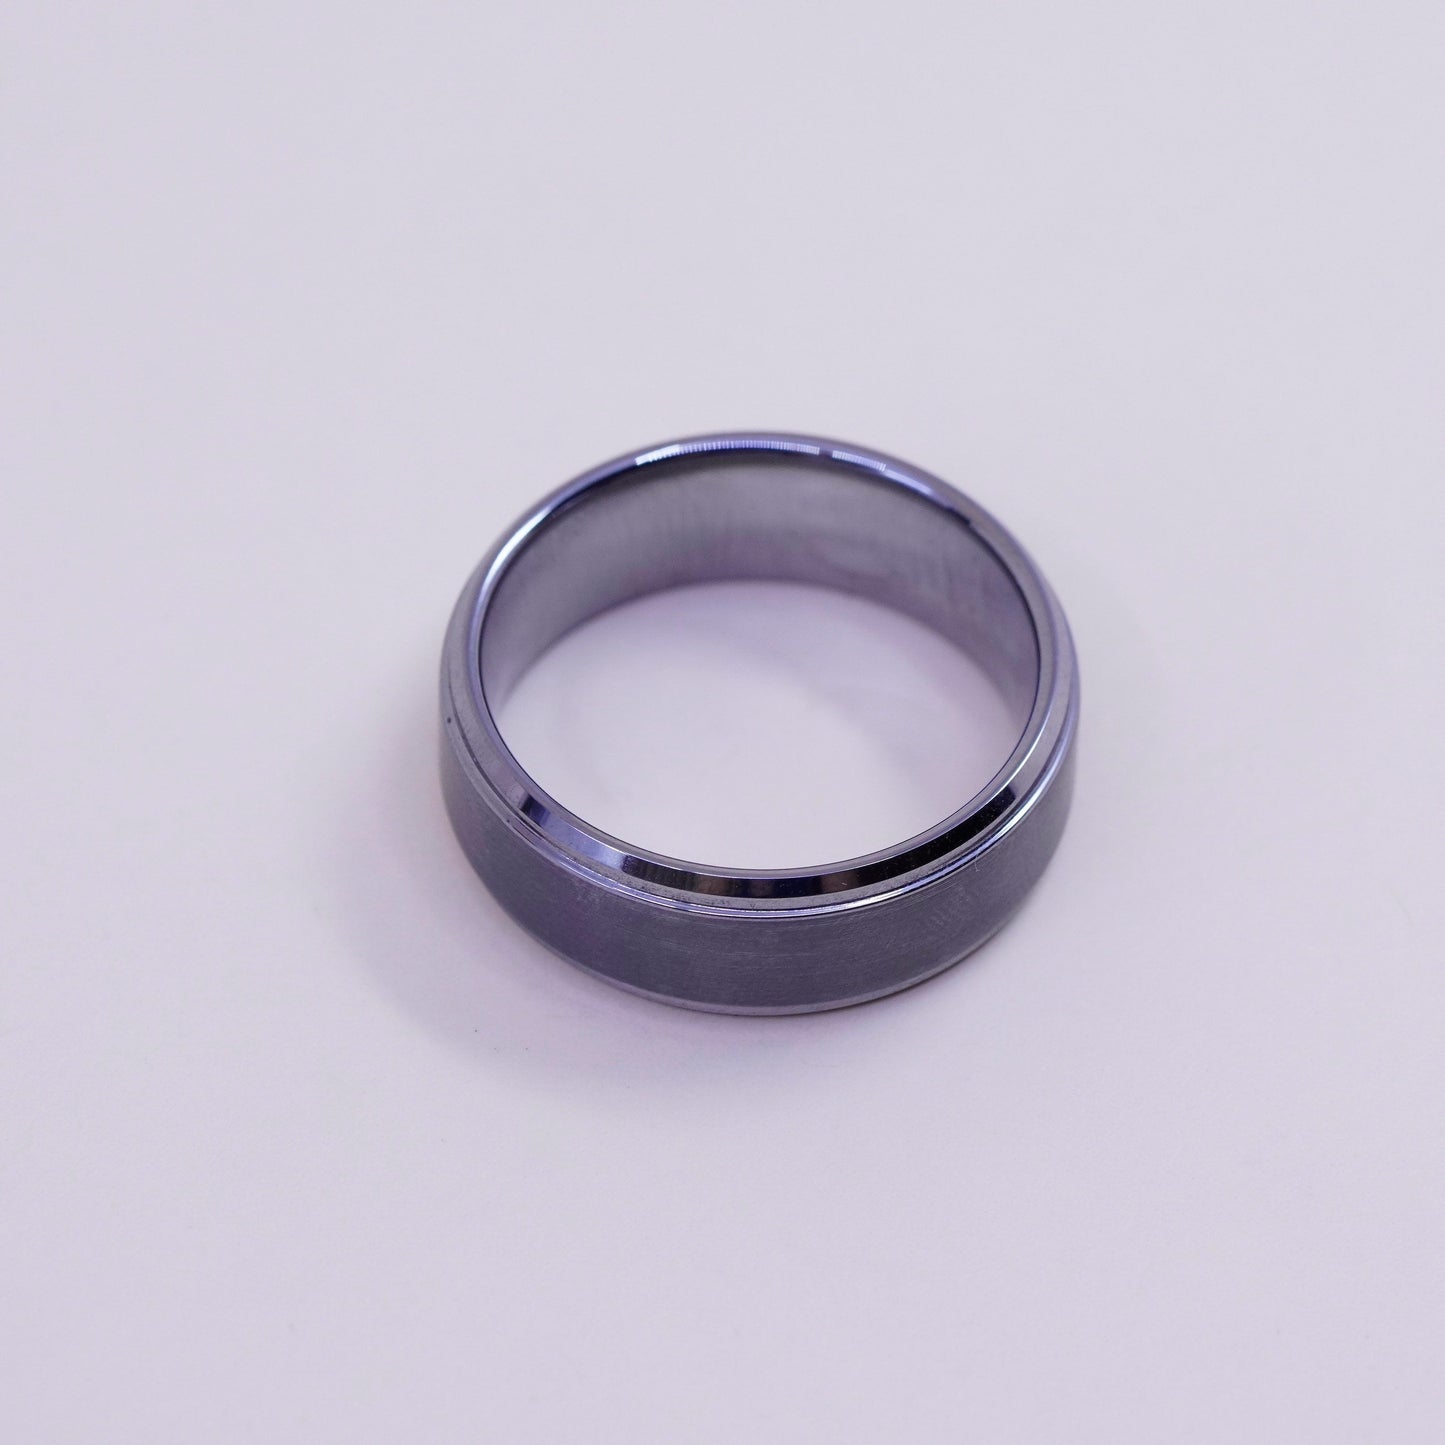 Size 12, Vintage tungsten carbide ring, men’s band, stamped tungsten carbide